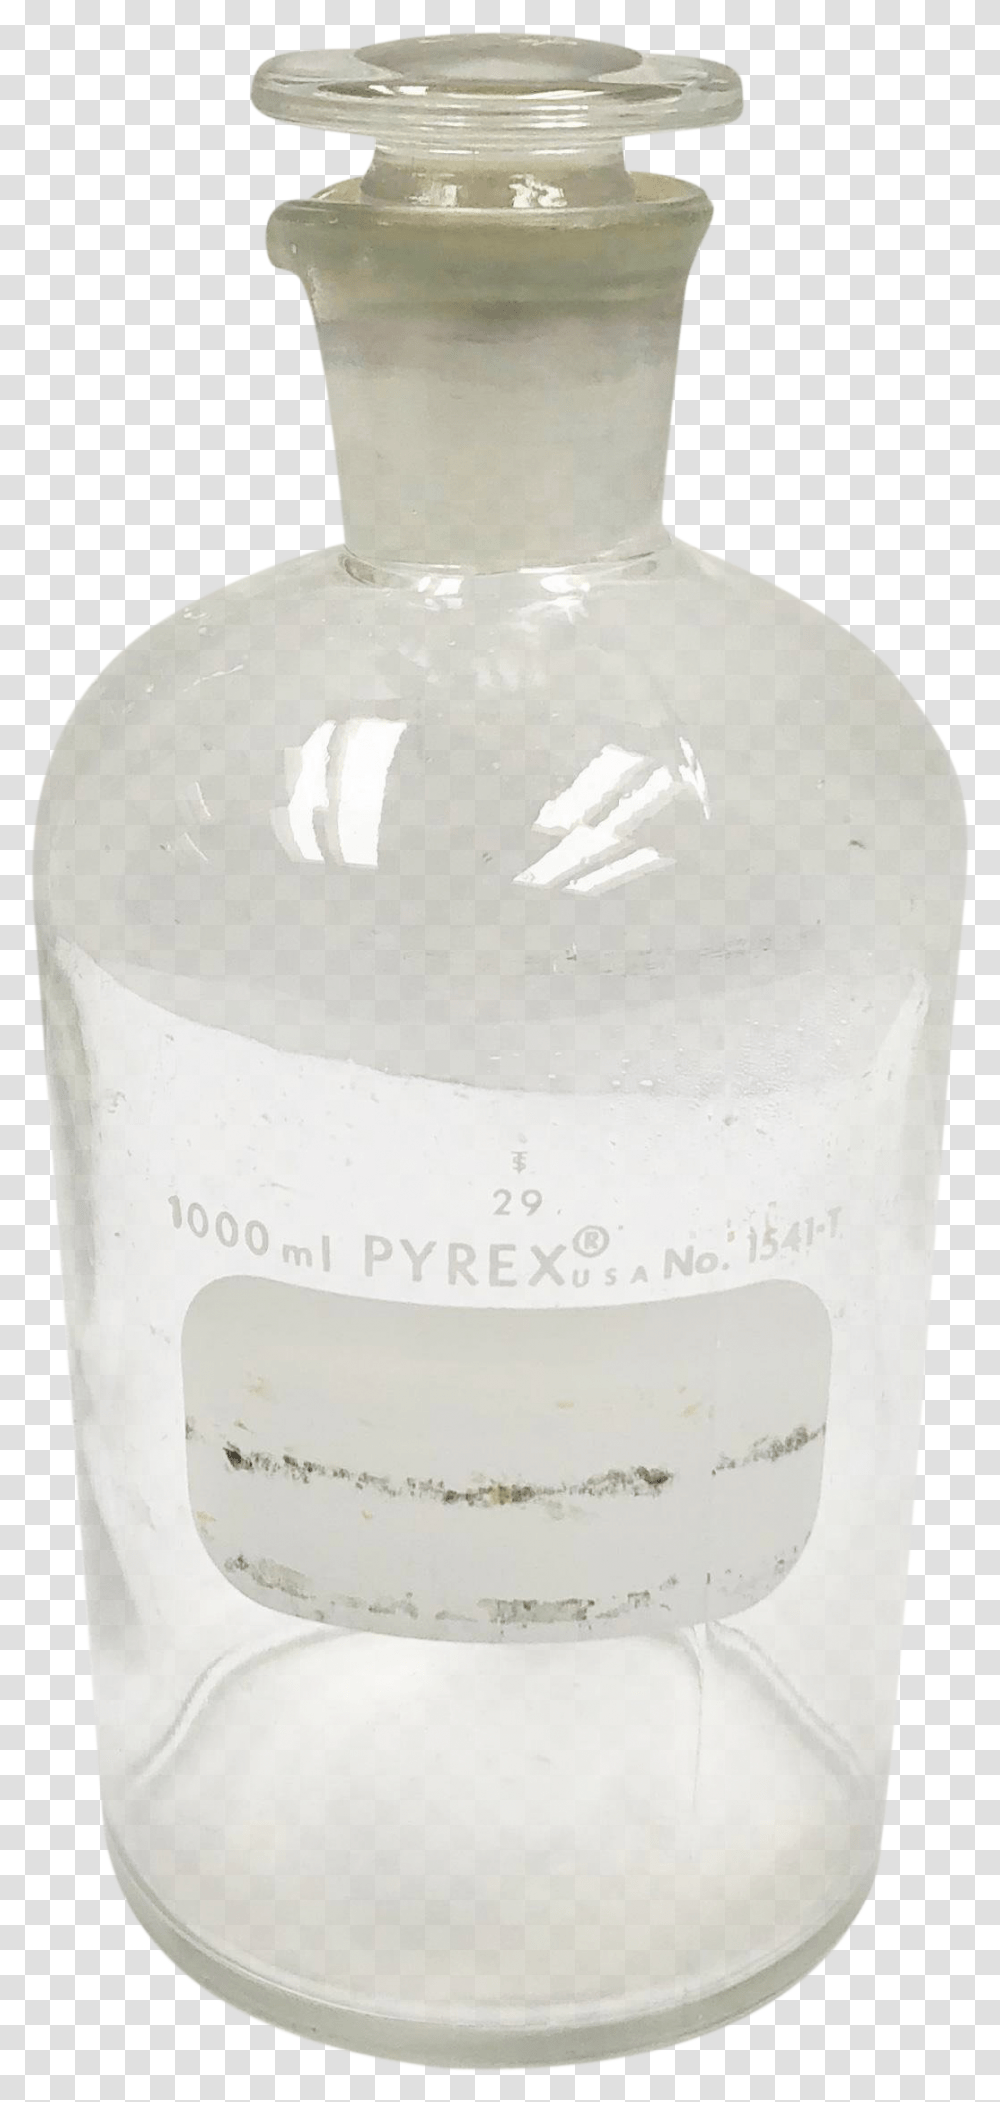 Chemistry Lab, Milk, Beverage, Bottle, Jar Transparent Png